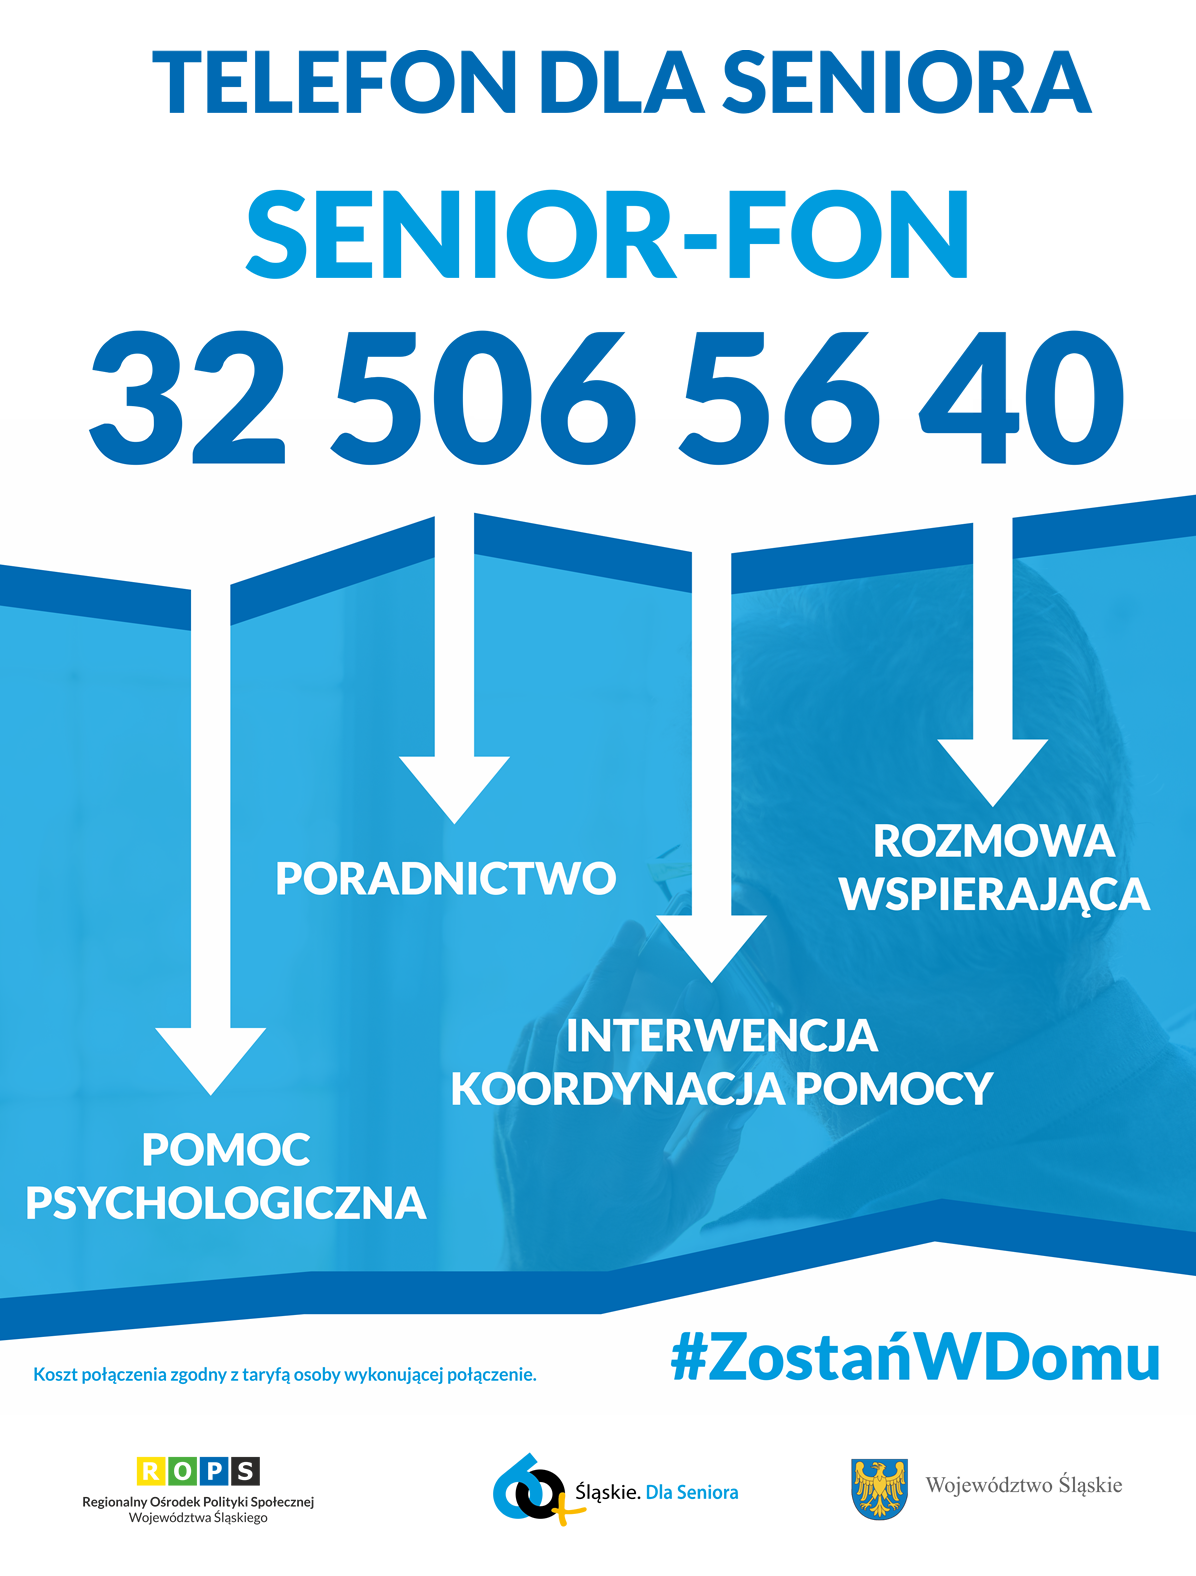 Seniorzy, w razie potrzeby dzwońcie pod numer  32 506 56 40 / Urząd Marszałkowski